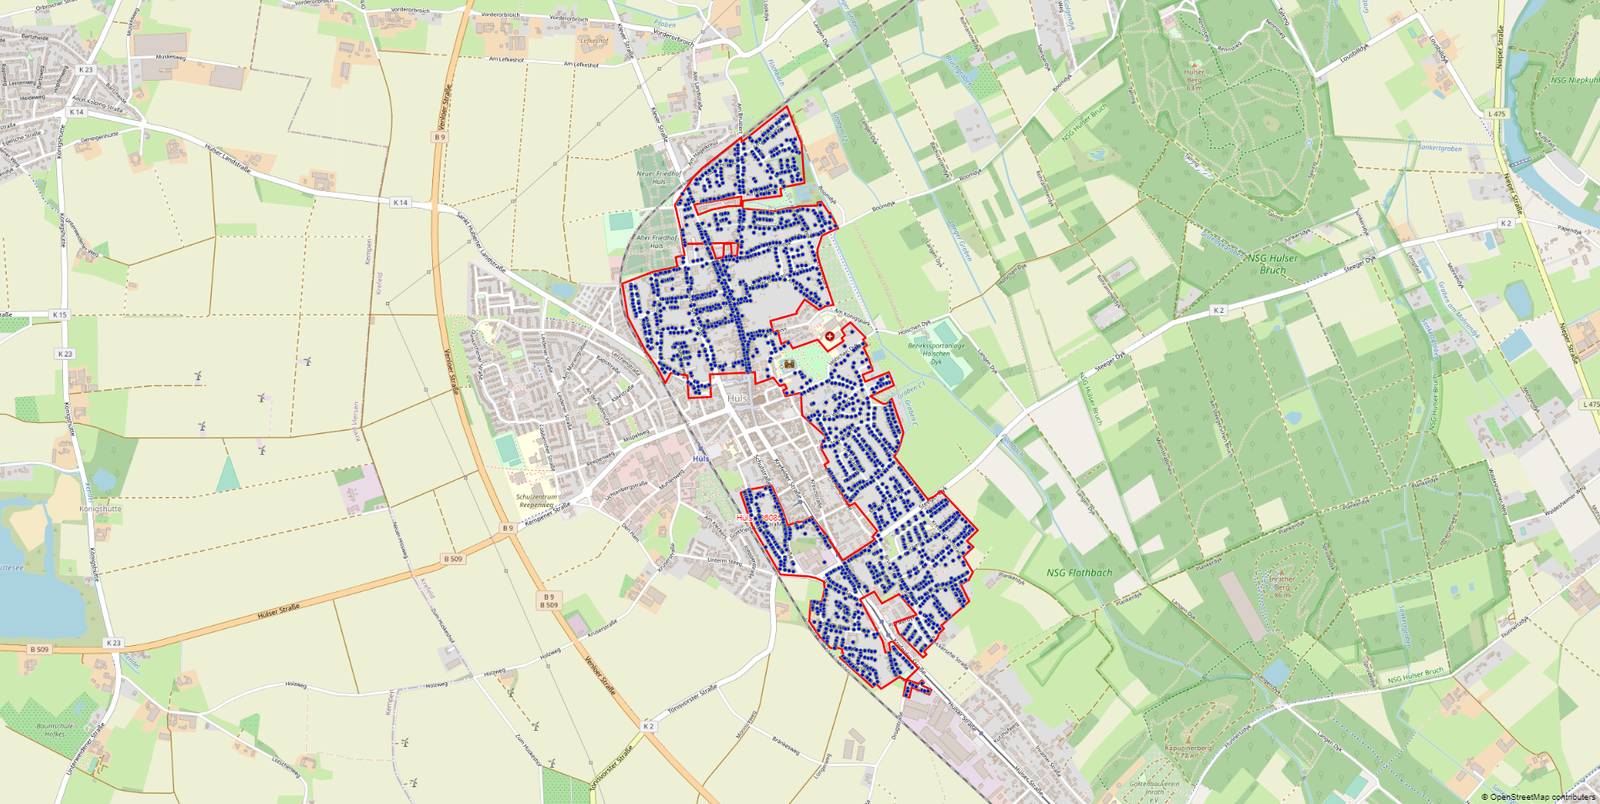 Das Ausbaugebiet in Hüls - der rote Rahmen zeigt in welchem Bereich ausgebaut werden könnte